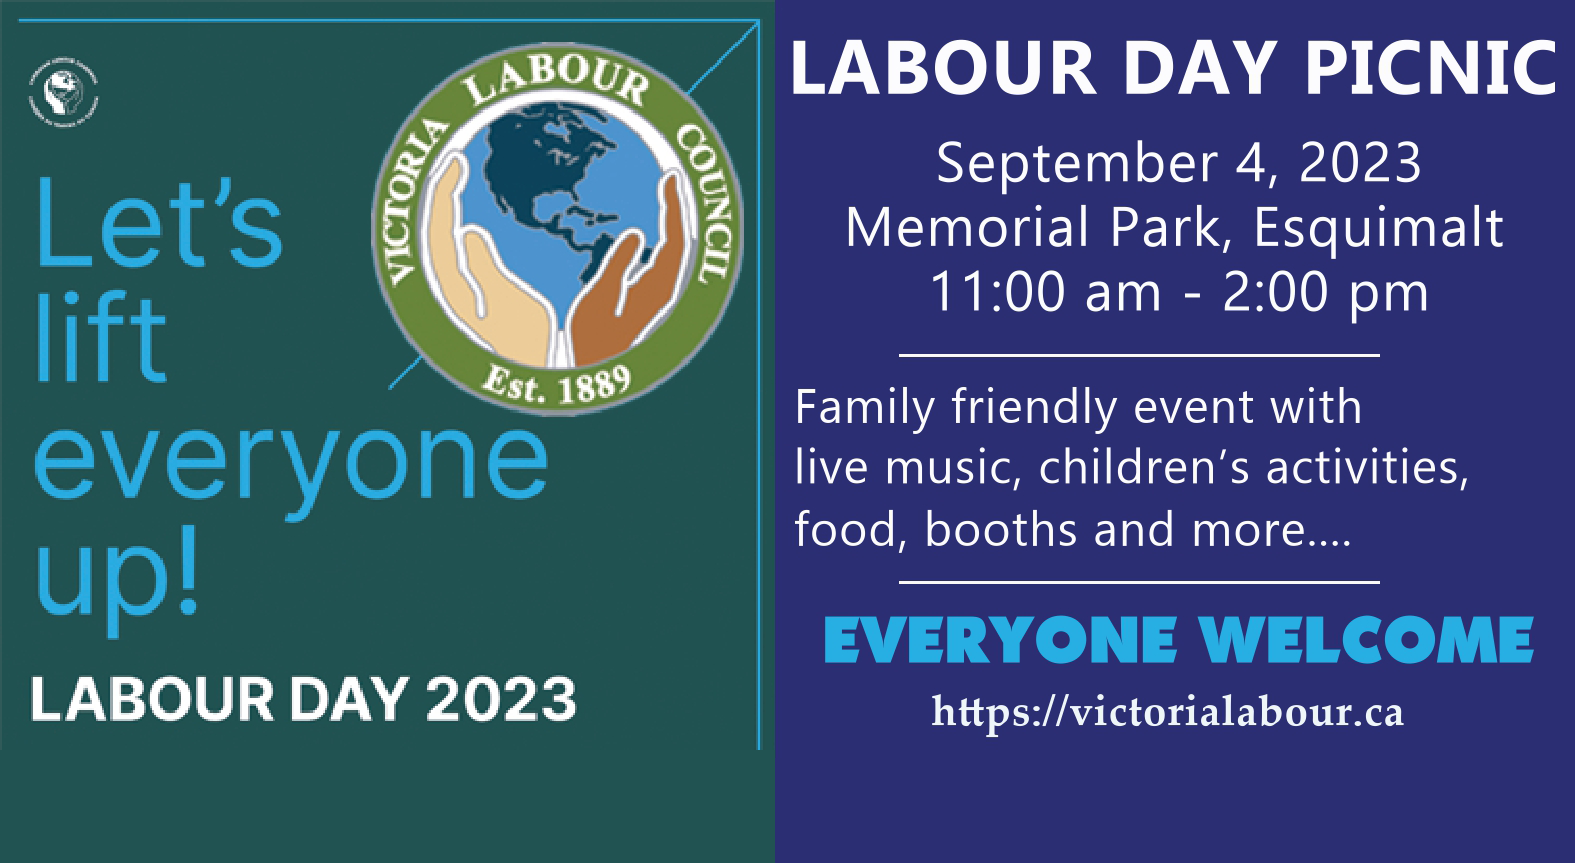 Labour Day 2023 Victoria Labour Council